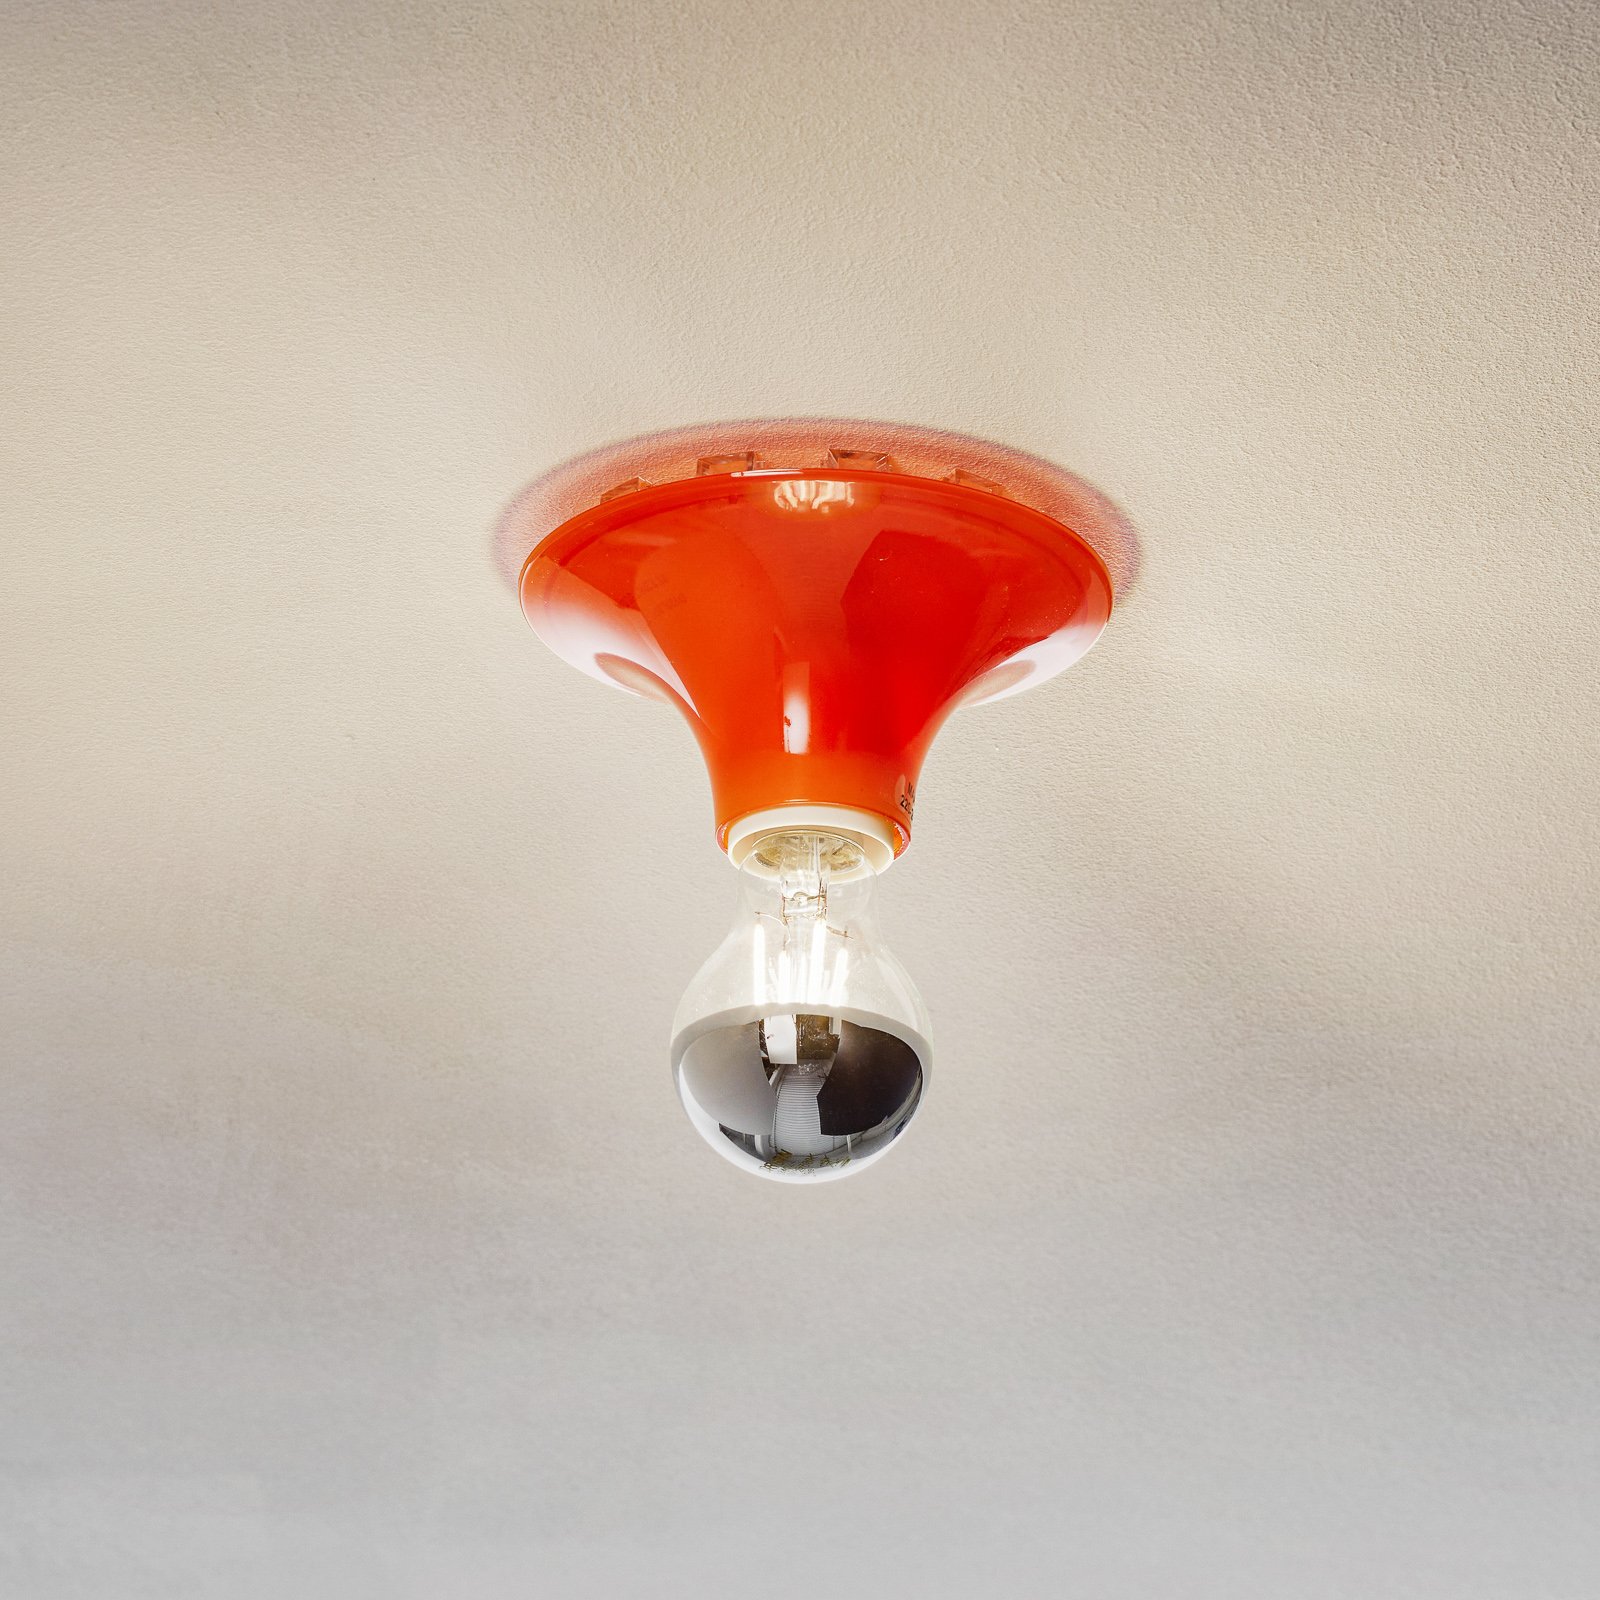 Artemide Teti designer ceiling light orange